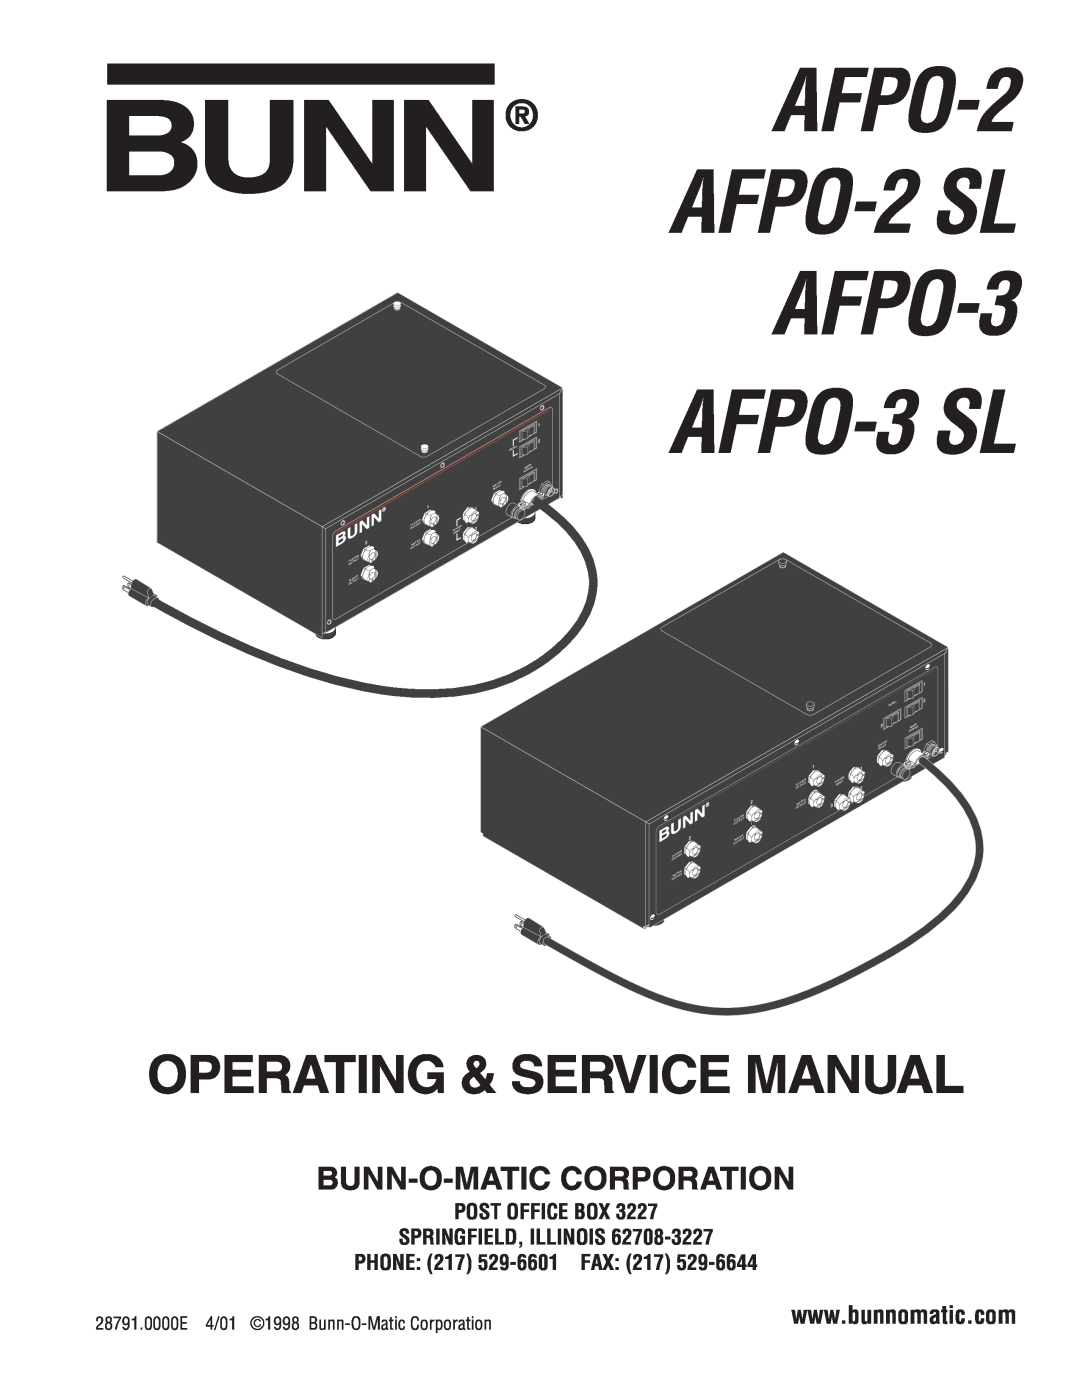 Bunn AFPO-2 SL service manual Bunn-O-Maticcorporation, AFPO-2 AFPO-2SL AFPO-3, AFPO-3SL VERSION DISCONTINUED 